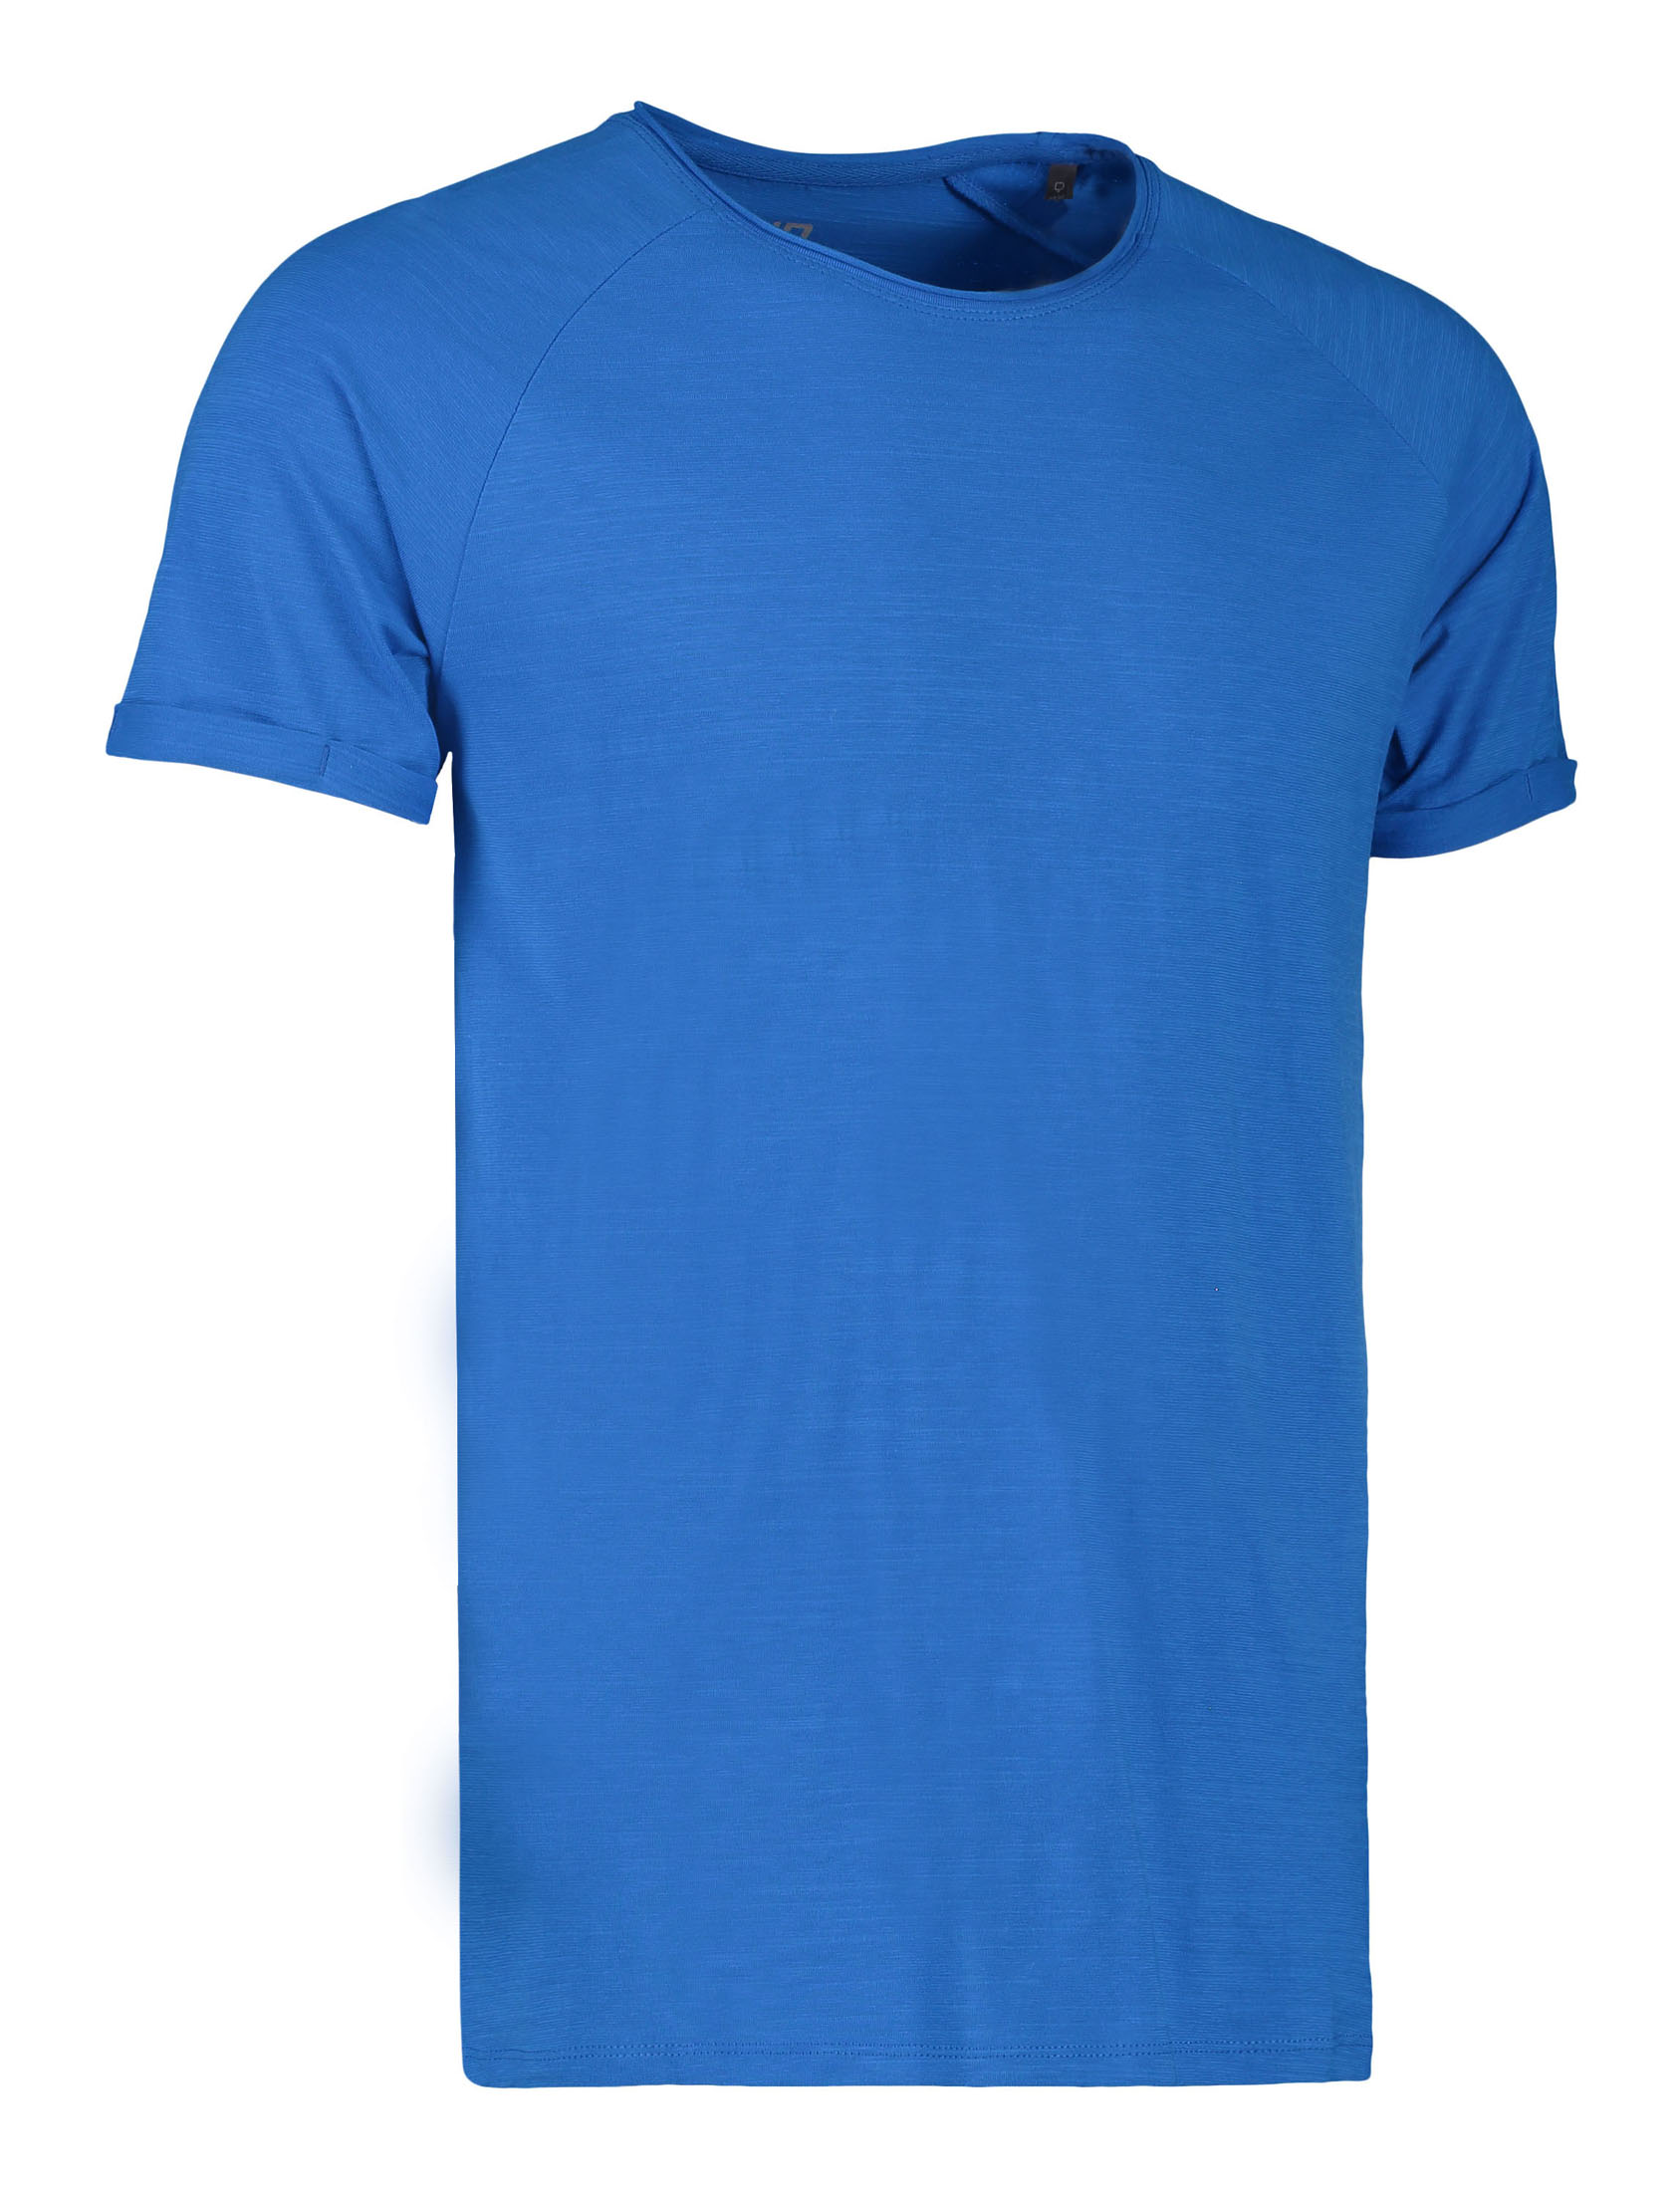 CORE T-shirt slub - Blå